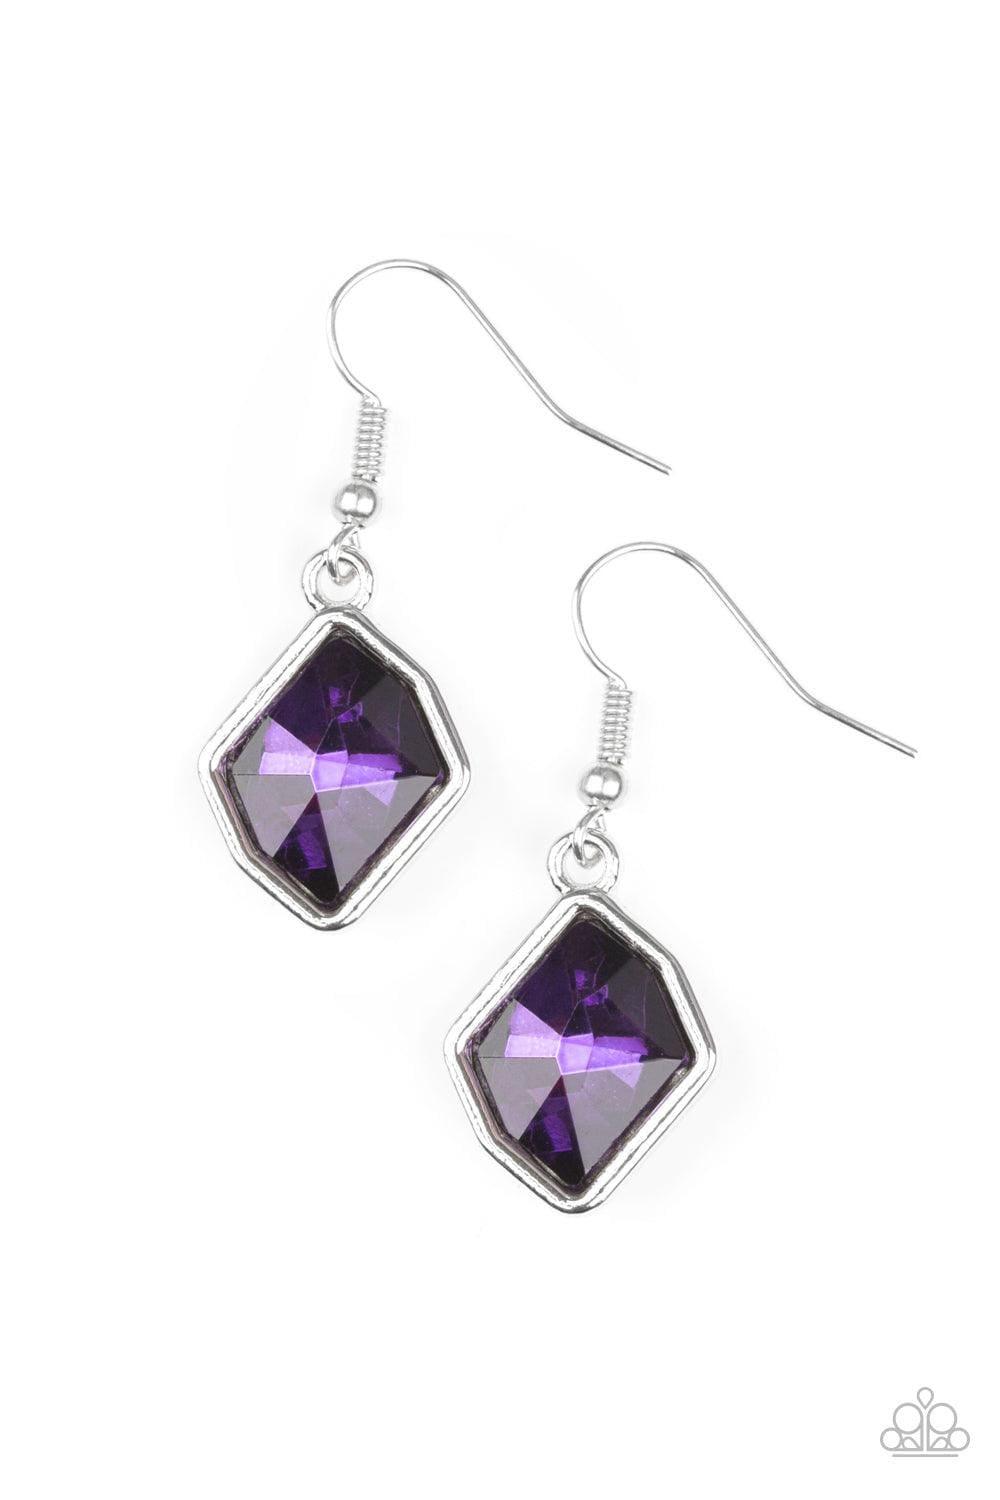 Paparazzi Accessories - Glow It Up - Purple Earrings - Bling by JessieK